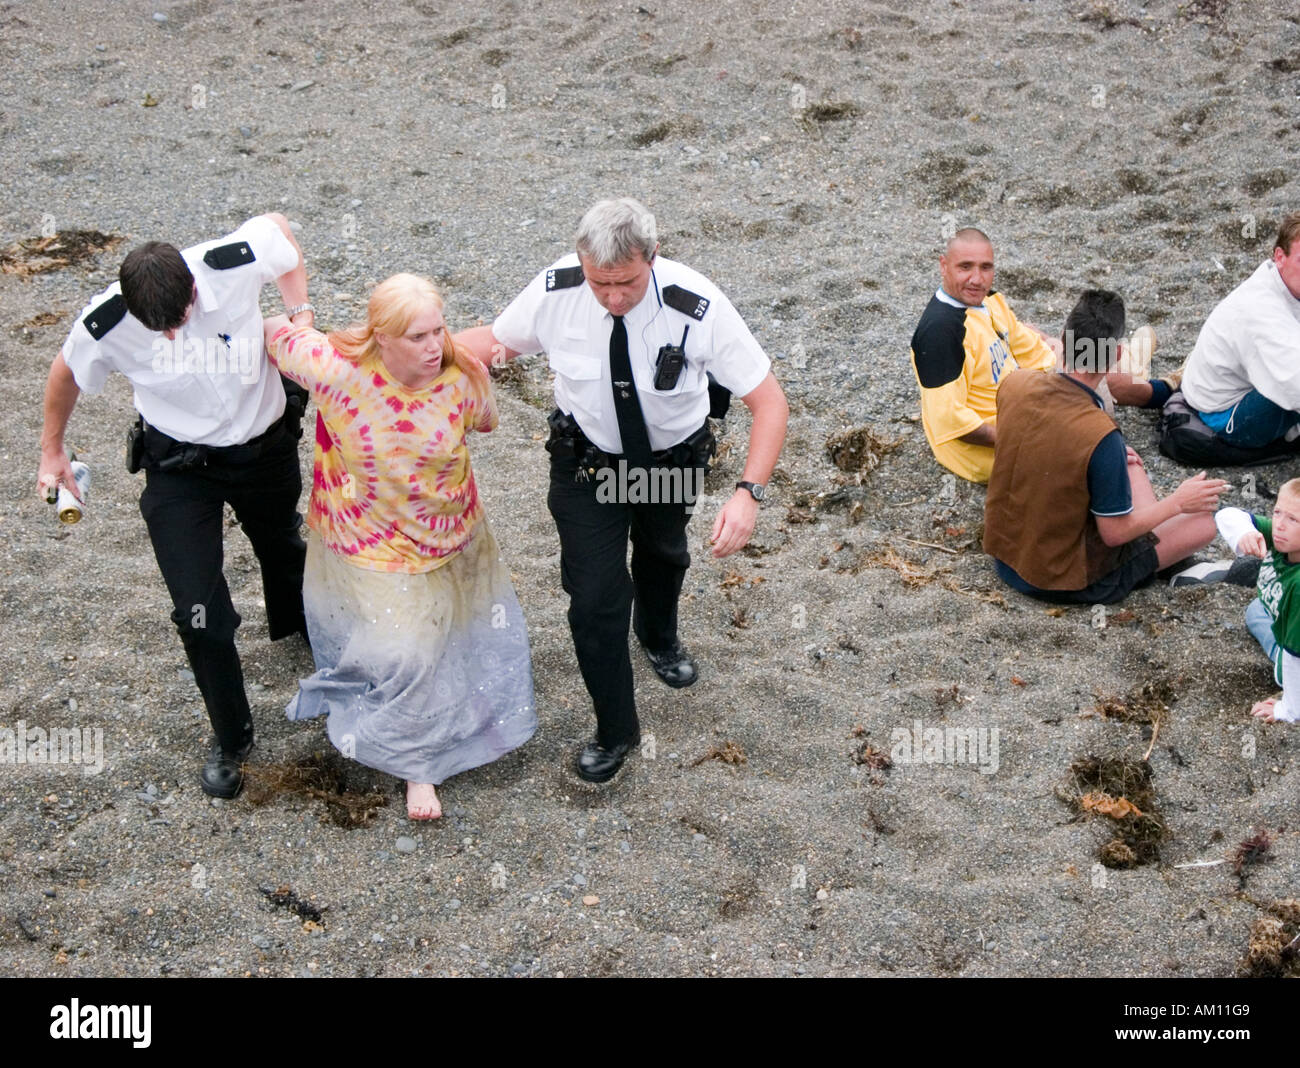 Polizei eine Frau verhaften und Durchsetzung eines Alkoholverbots trinken in der Öffentlichkeit am Strand Aberystwyth Ceredigion Wales UK Stockfoto